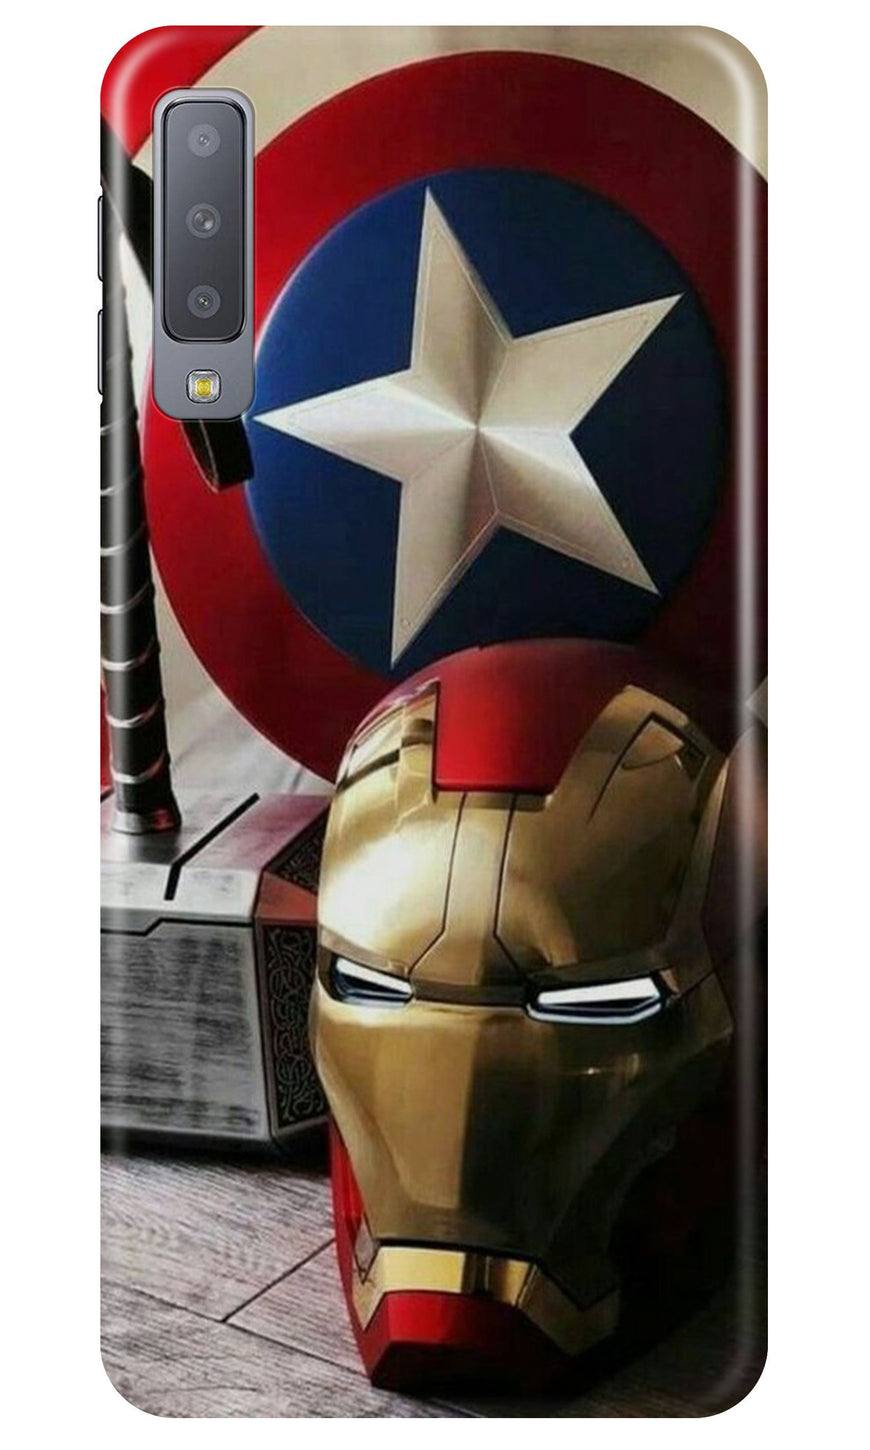 Ironman Captain America Case for Samung Galaxy A70s (Design No. 254)